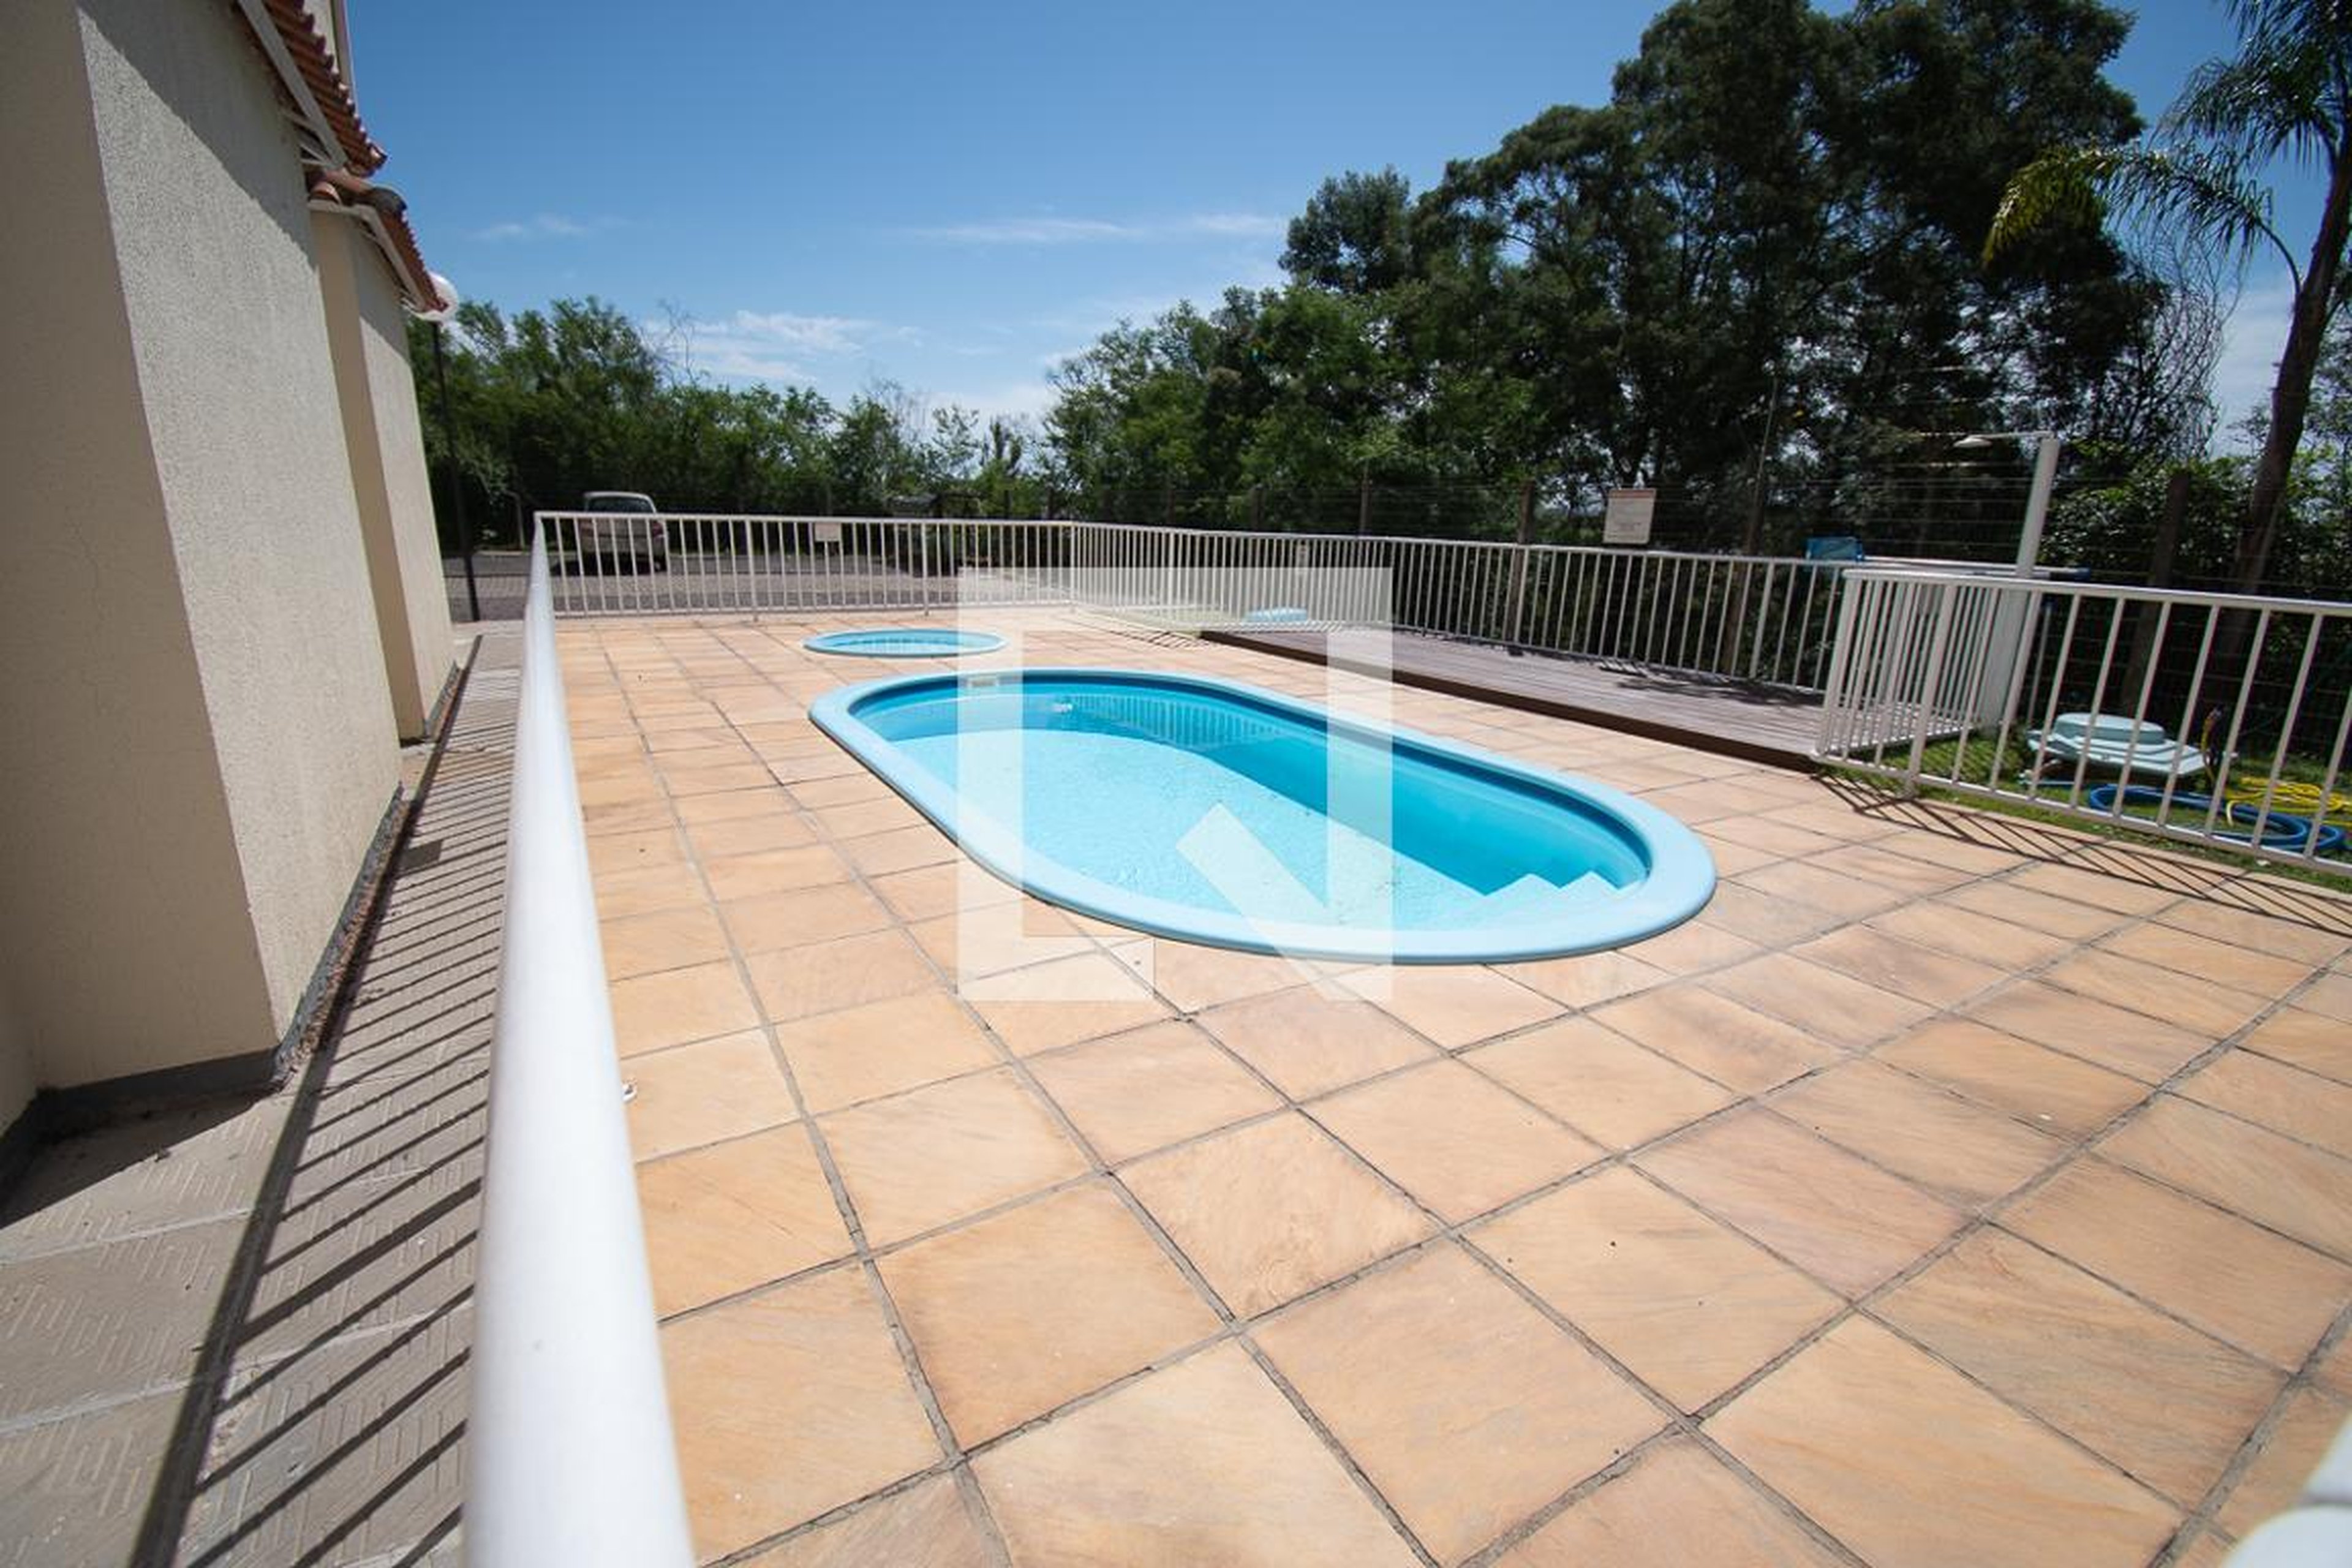 piscina - Residencial e Comercial Tom Jobim